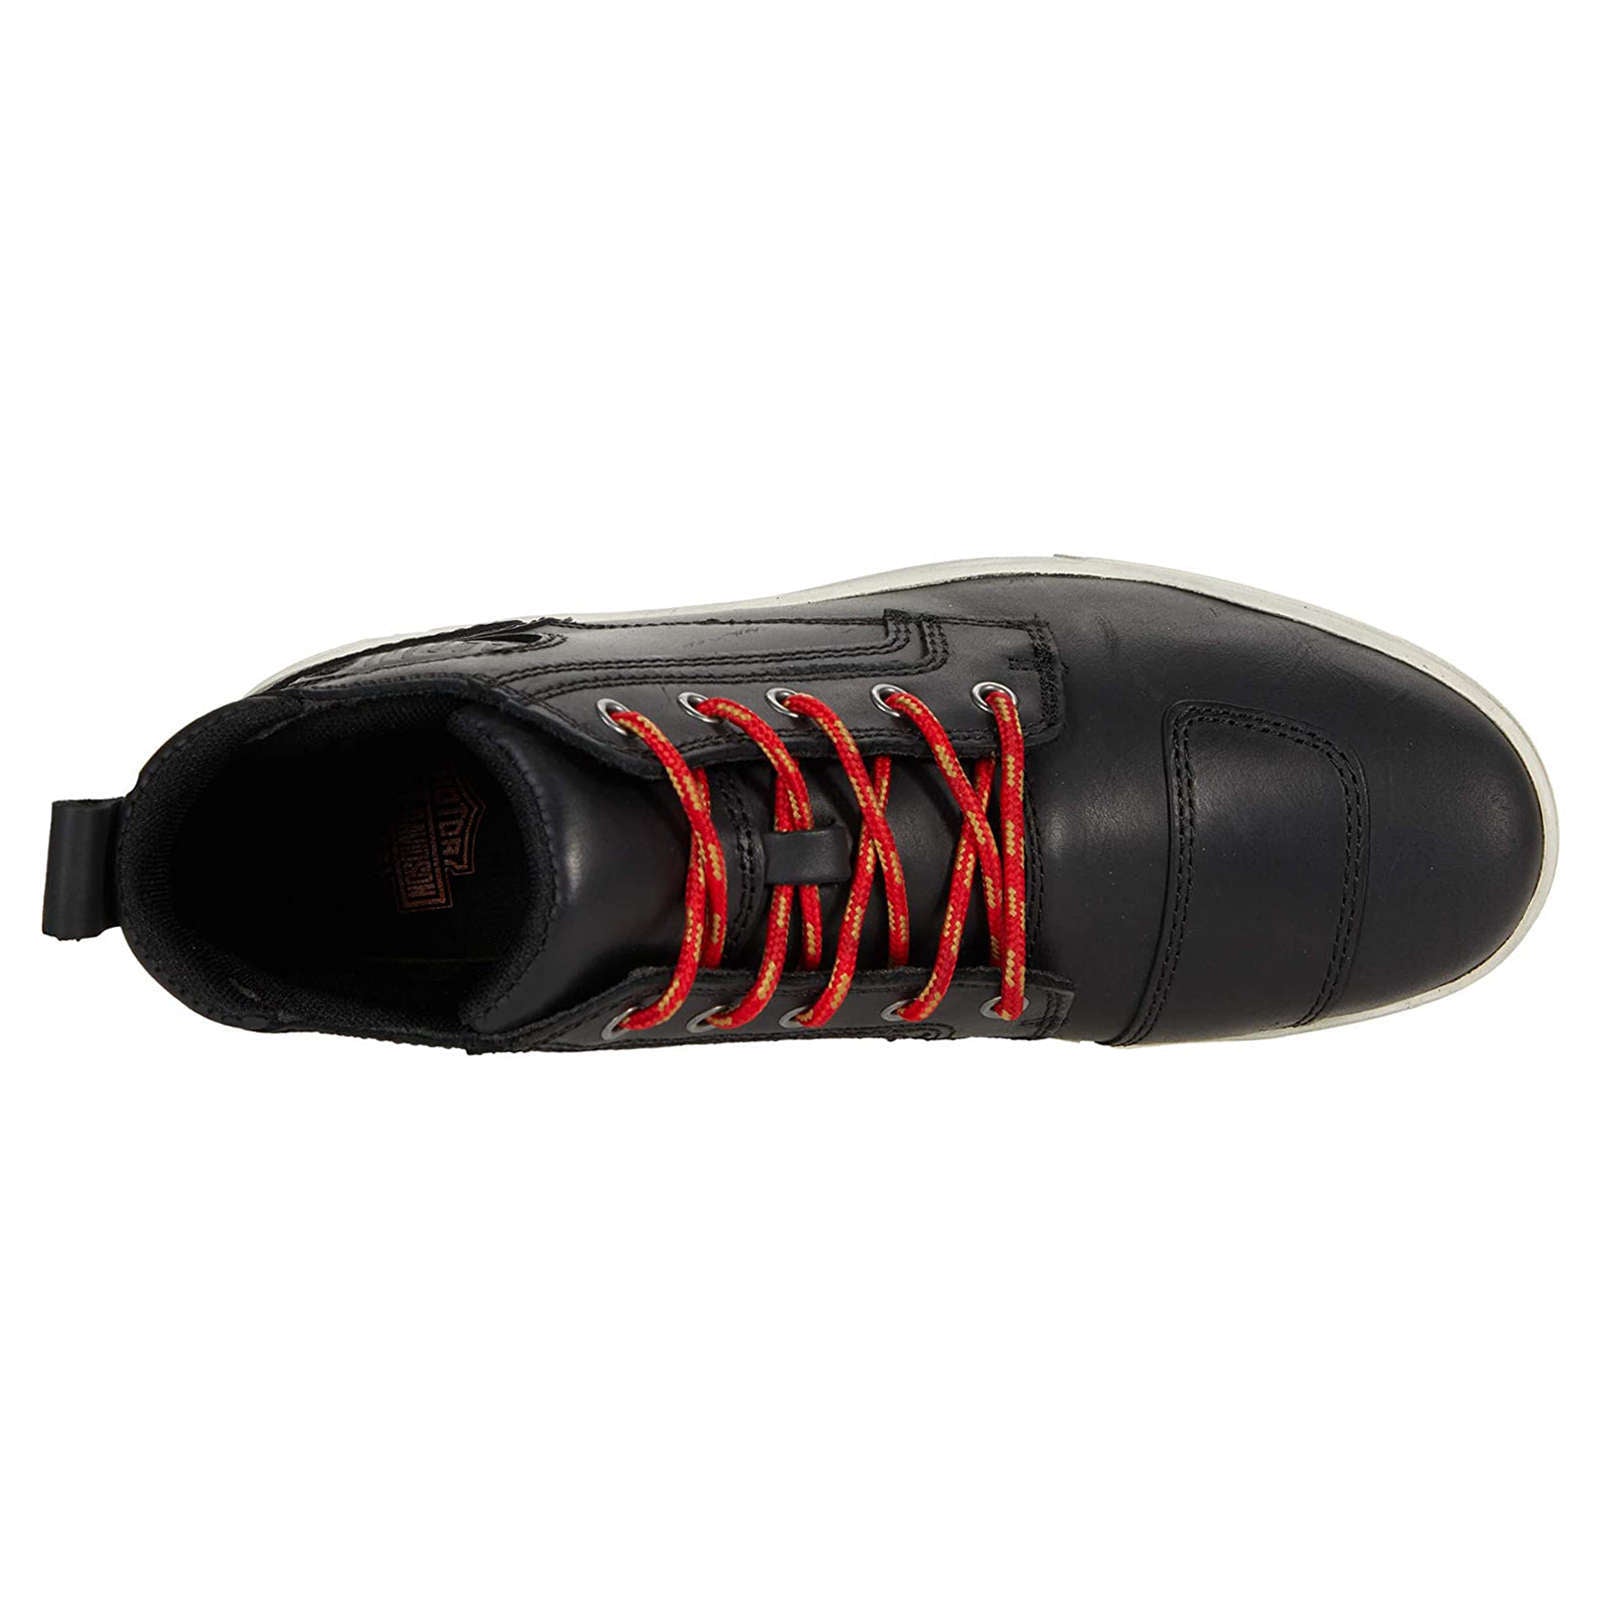 Harley Davidson Bateman Pro Full Grain Leather Men's Ankle Boots#color_black